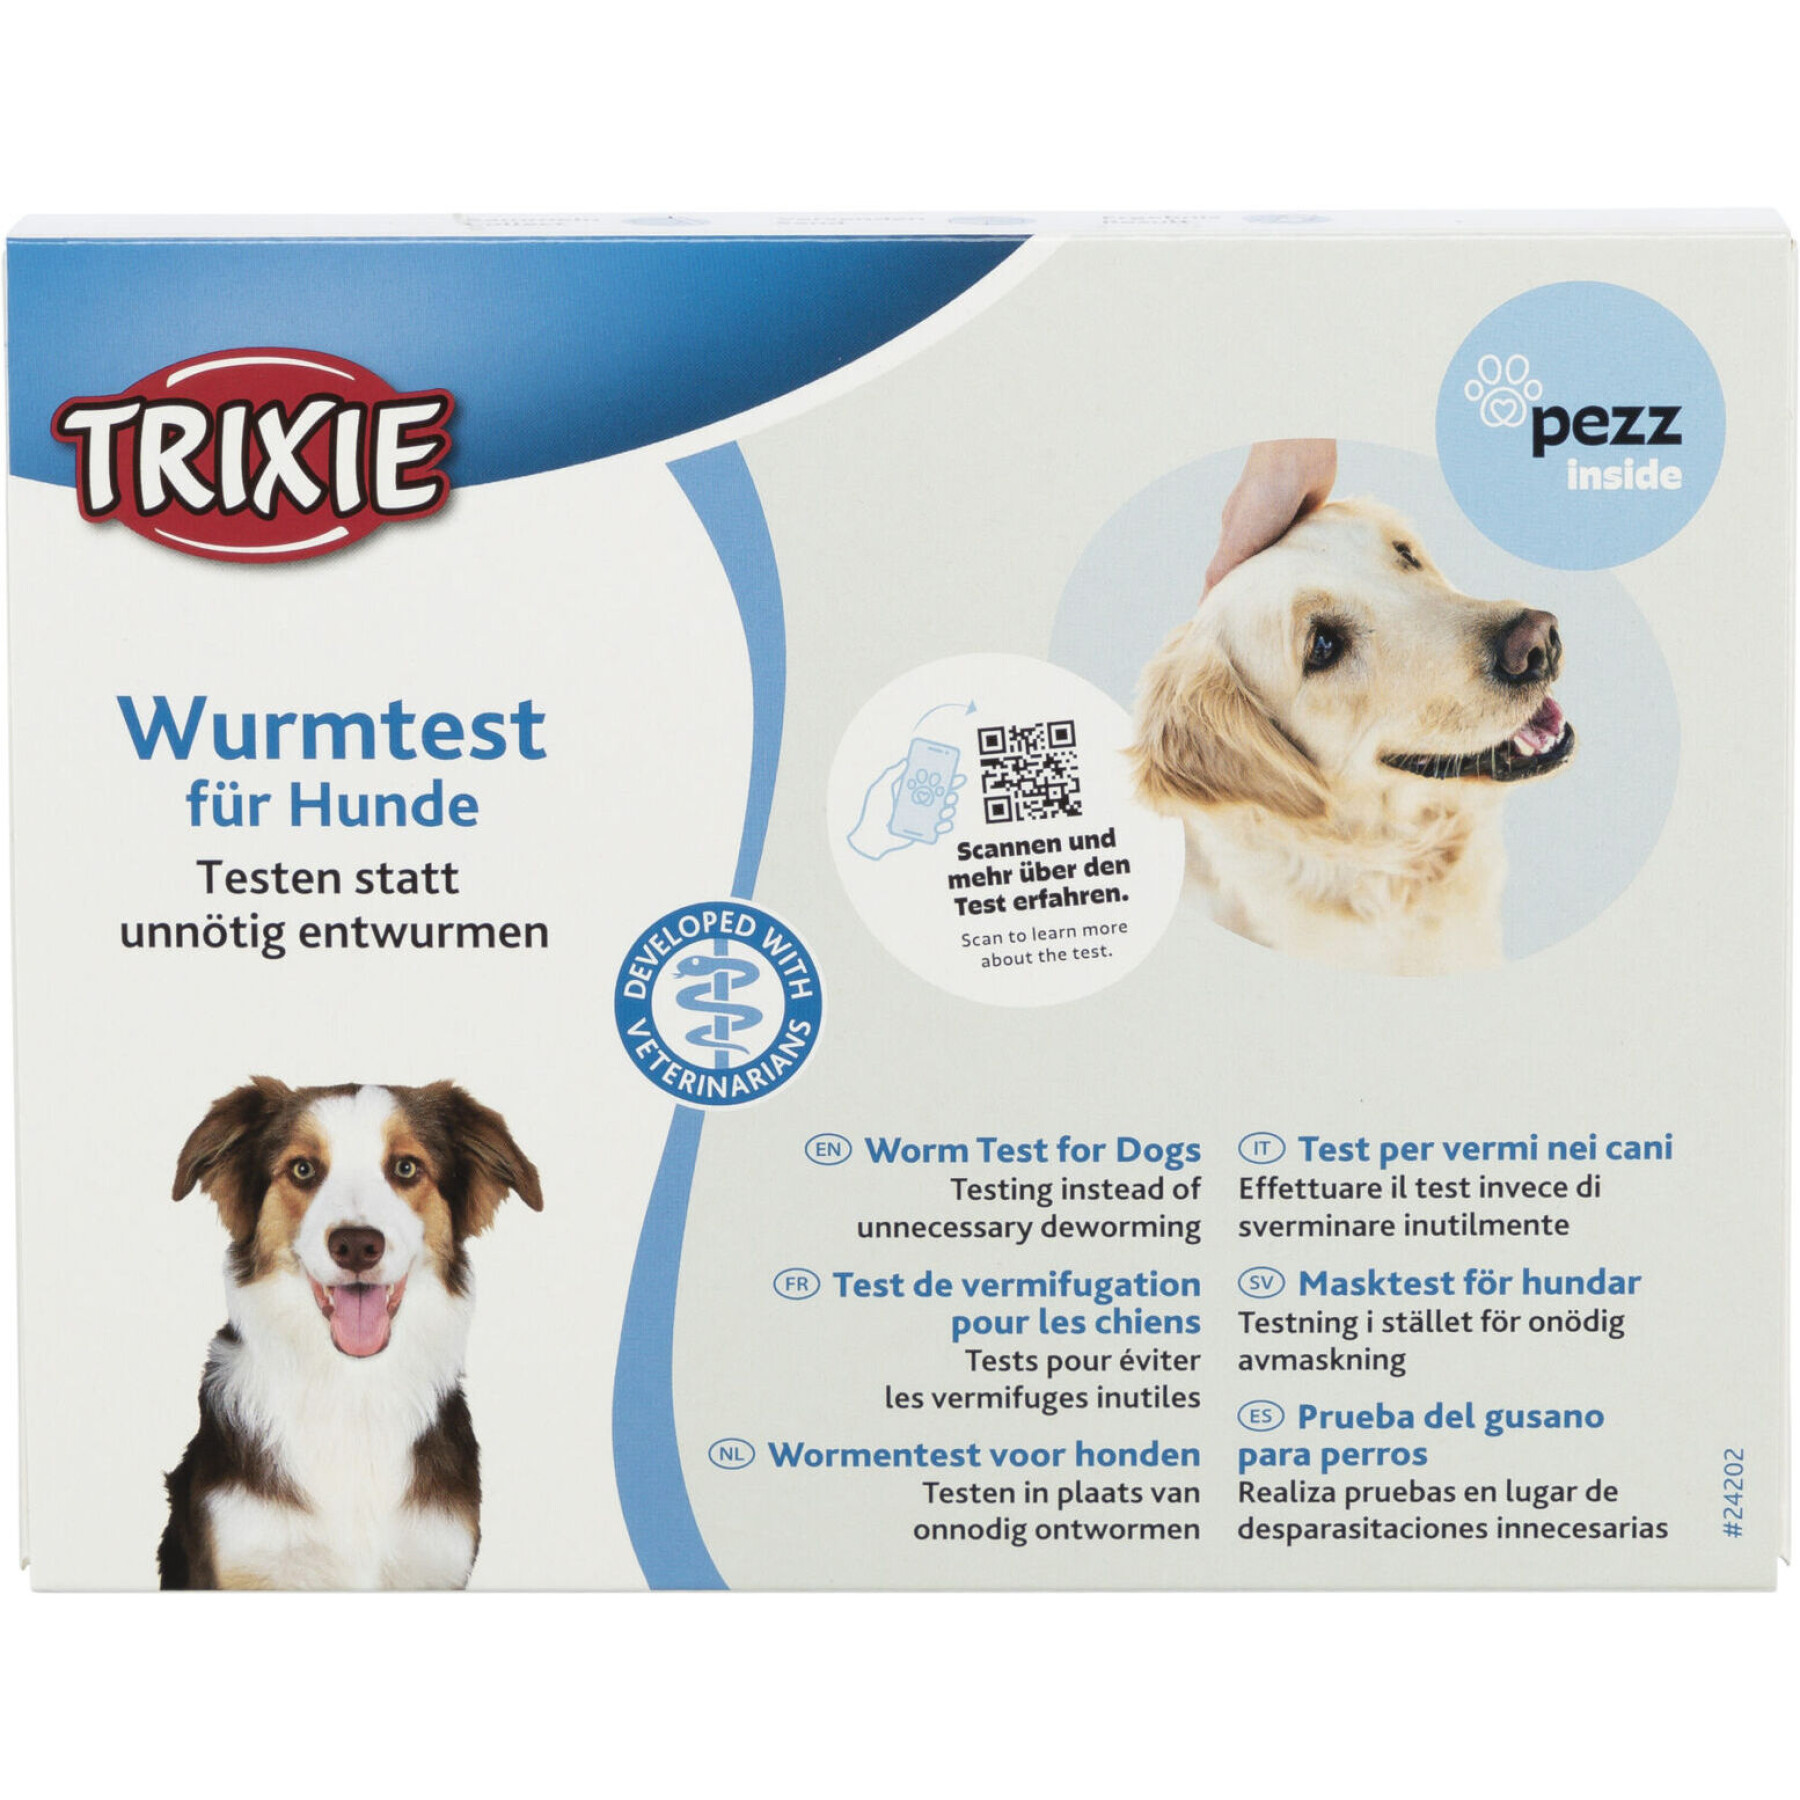 Cuidados com o cão Teste de desparasitação Trixie